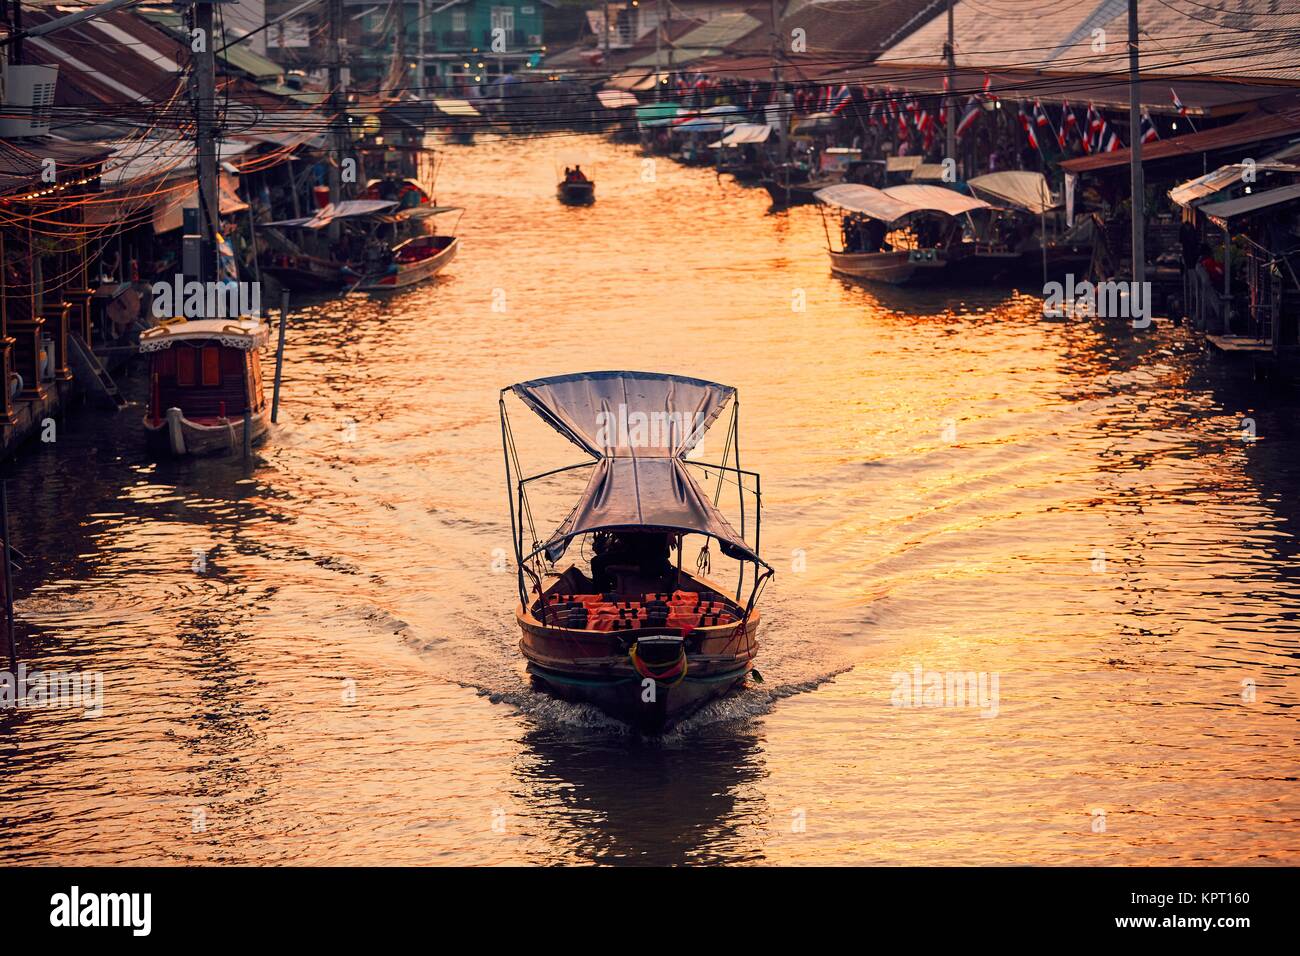 Traditional old floating market Amphawa in Ratchaburi Province near Bangkok, Thailand. Stock Photo